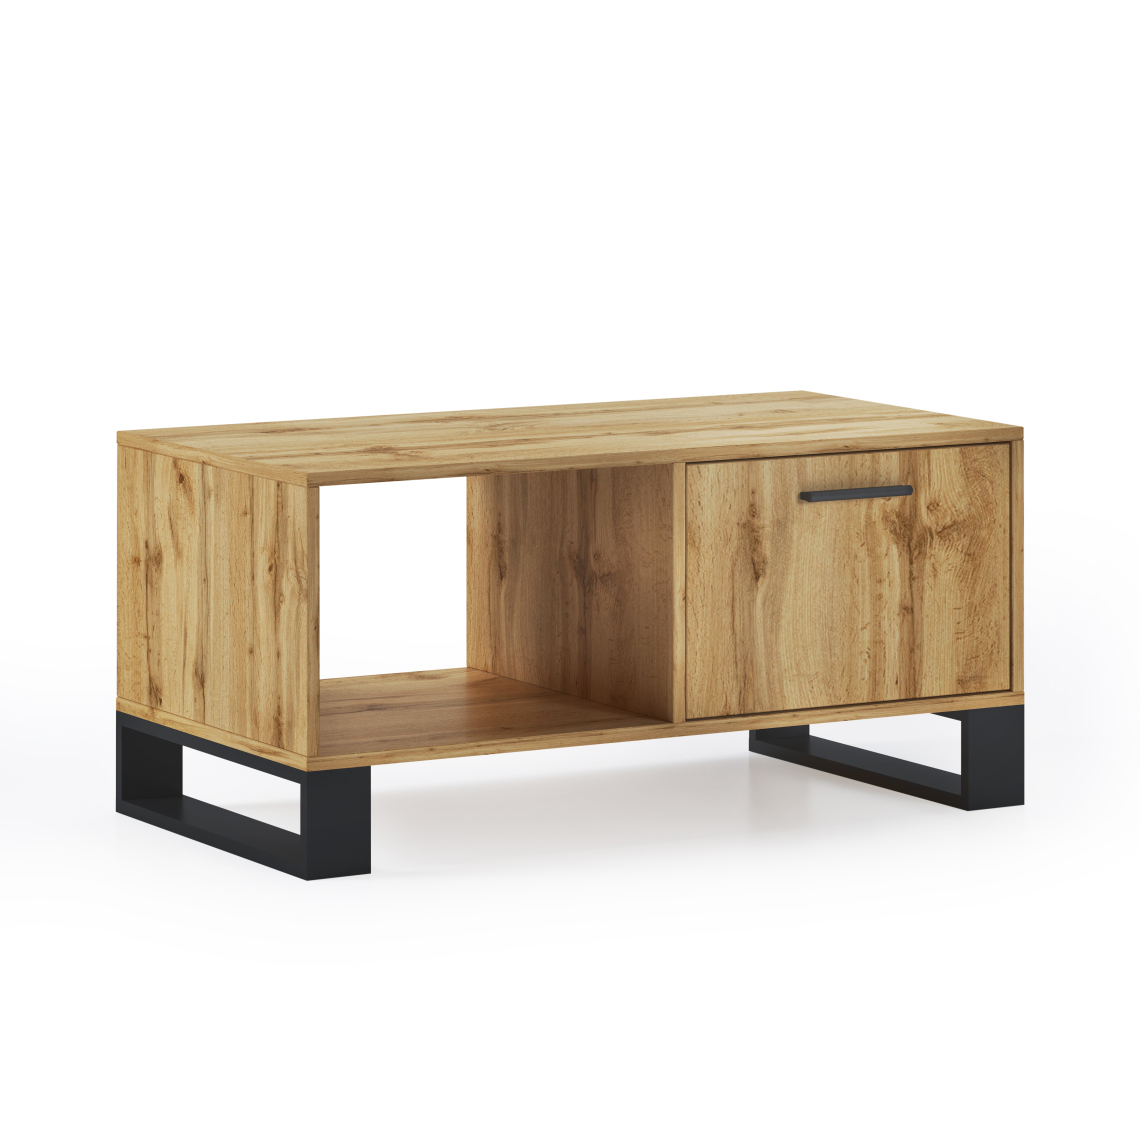 Skraut Home - Table basse LOFT, couleur chêne rustique,92x50x45cm - Tables basses